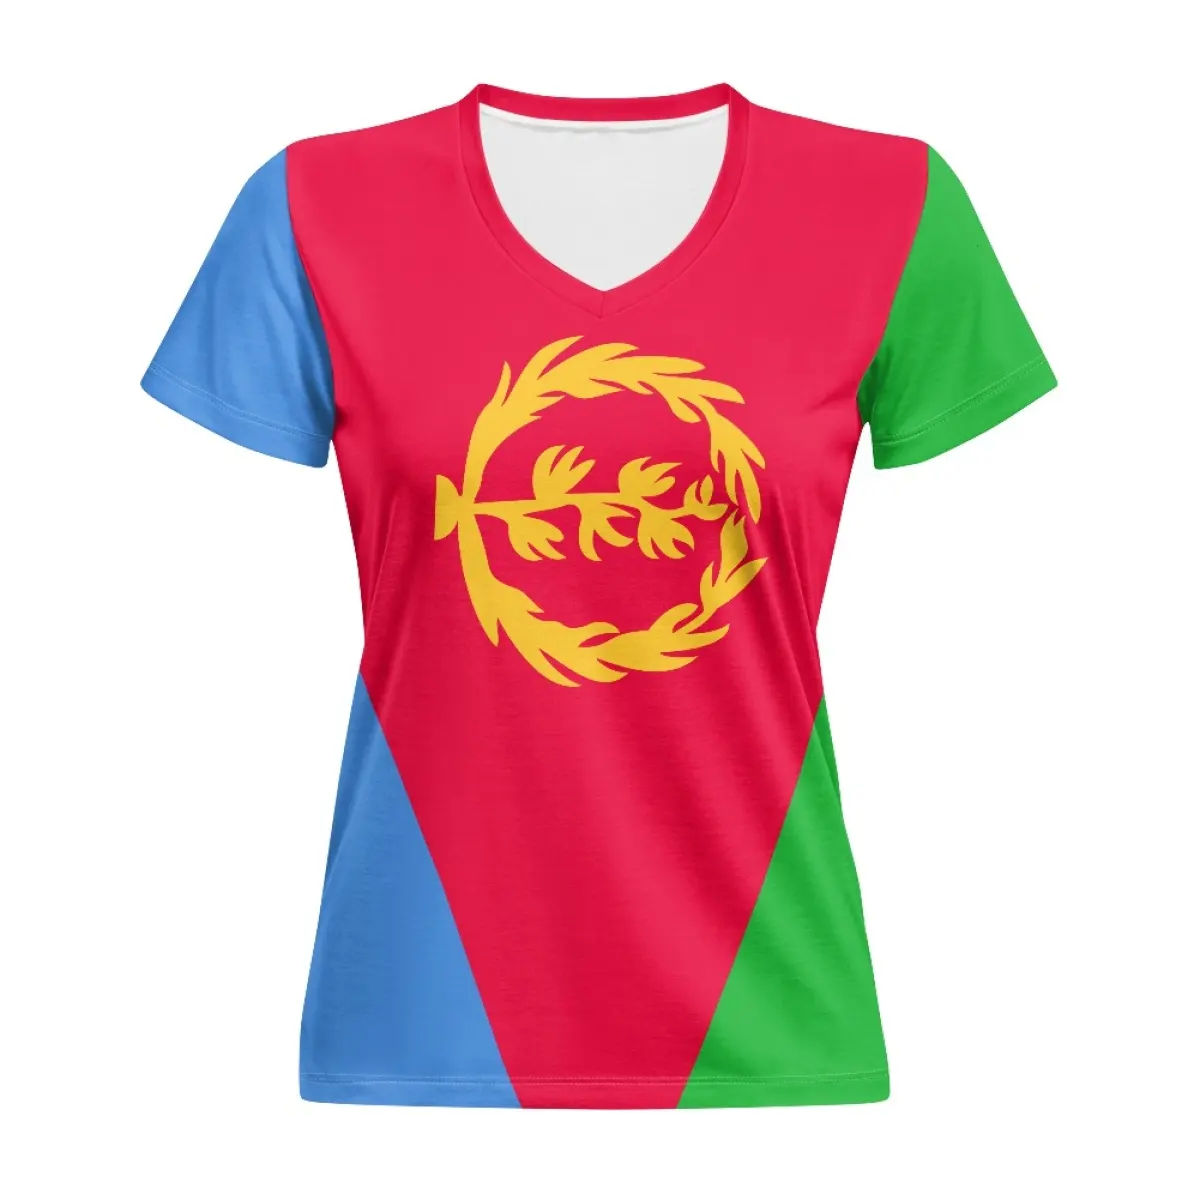 Yeni varış V boyun eritre kadın t-shirt ucuz toptan hızlı kuru Eritrean bayrağı özel T Shirt bayanlar seksi zarif Tops Tees